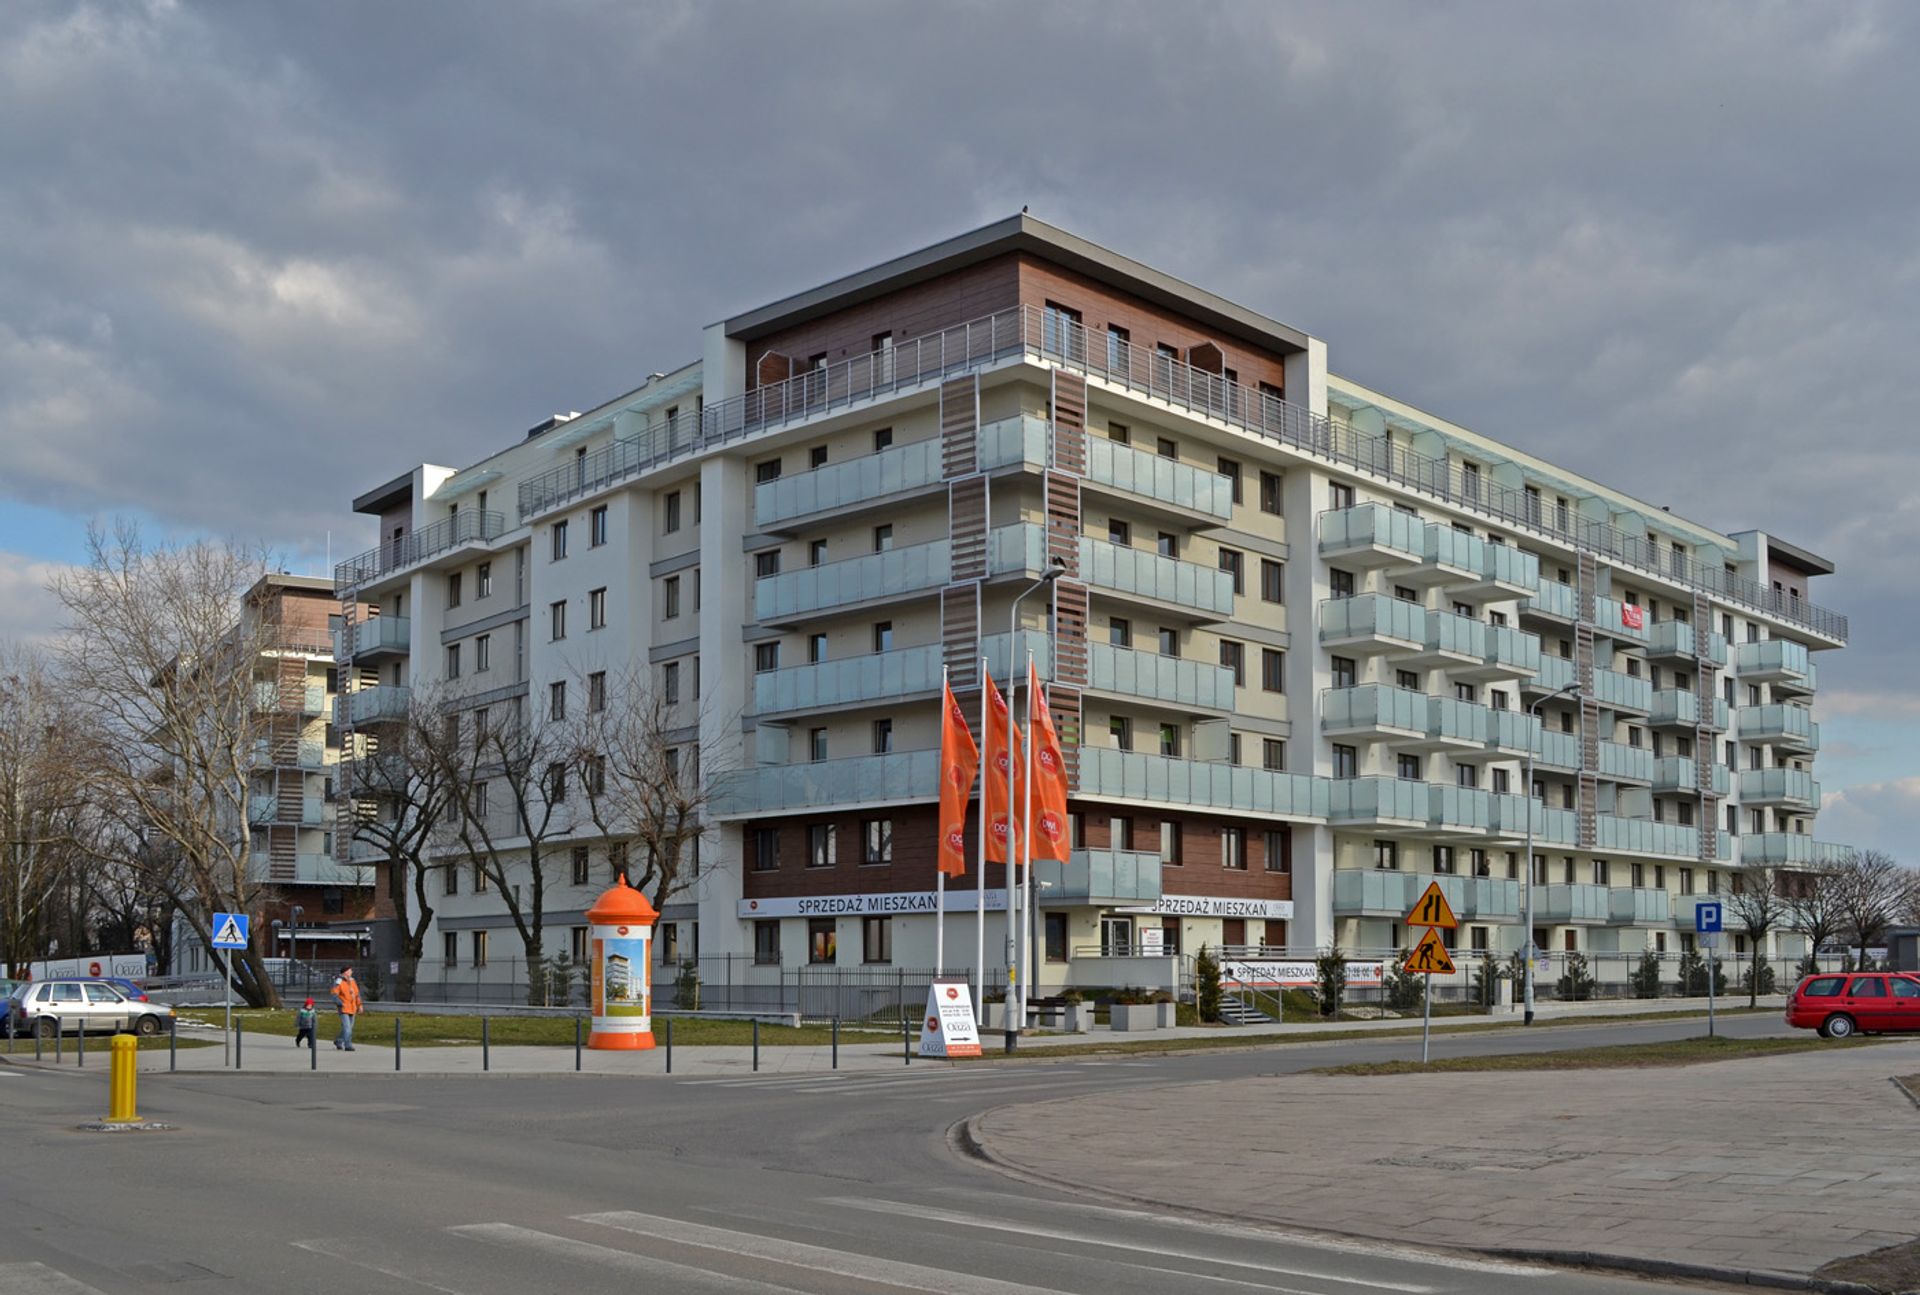  Największy spadek cen mieszkań we Wrocławiu